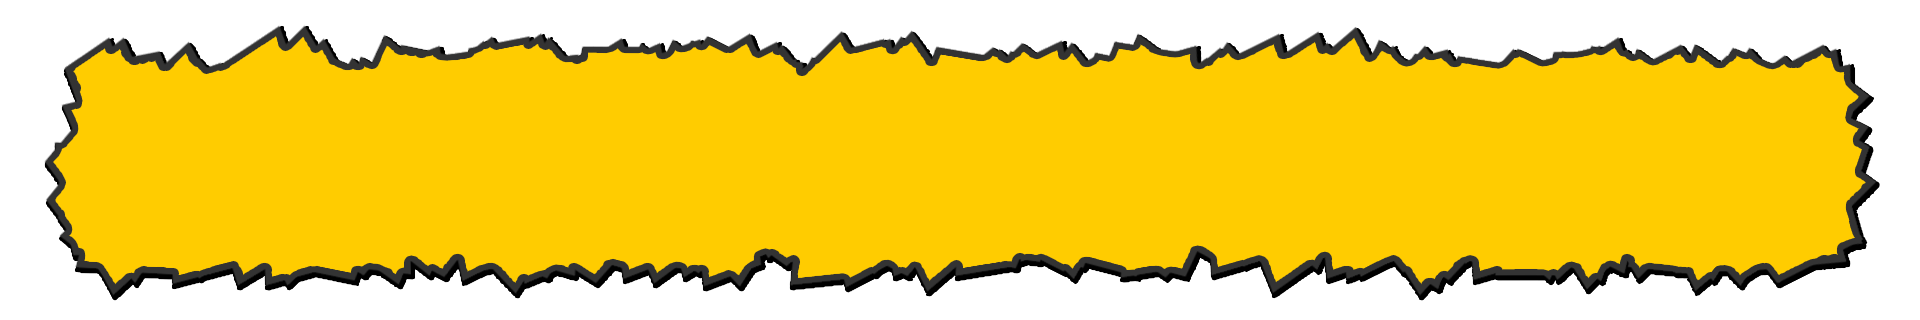 ギザギザのテロップ 黄色 テロップ サイト